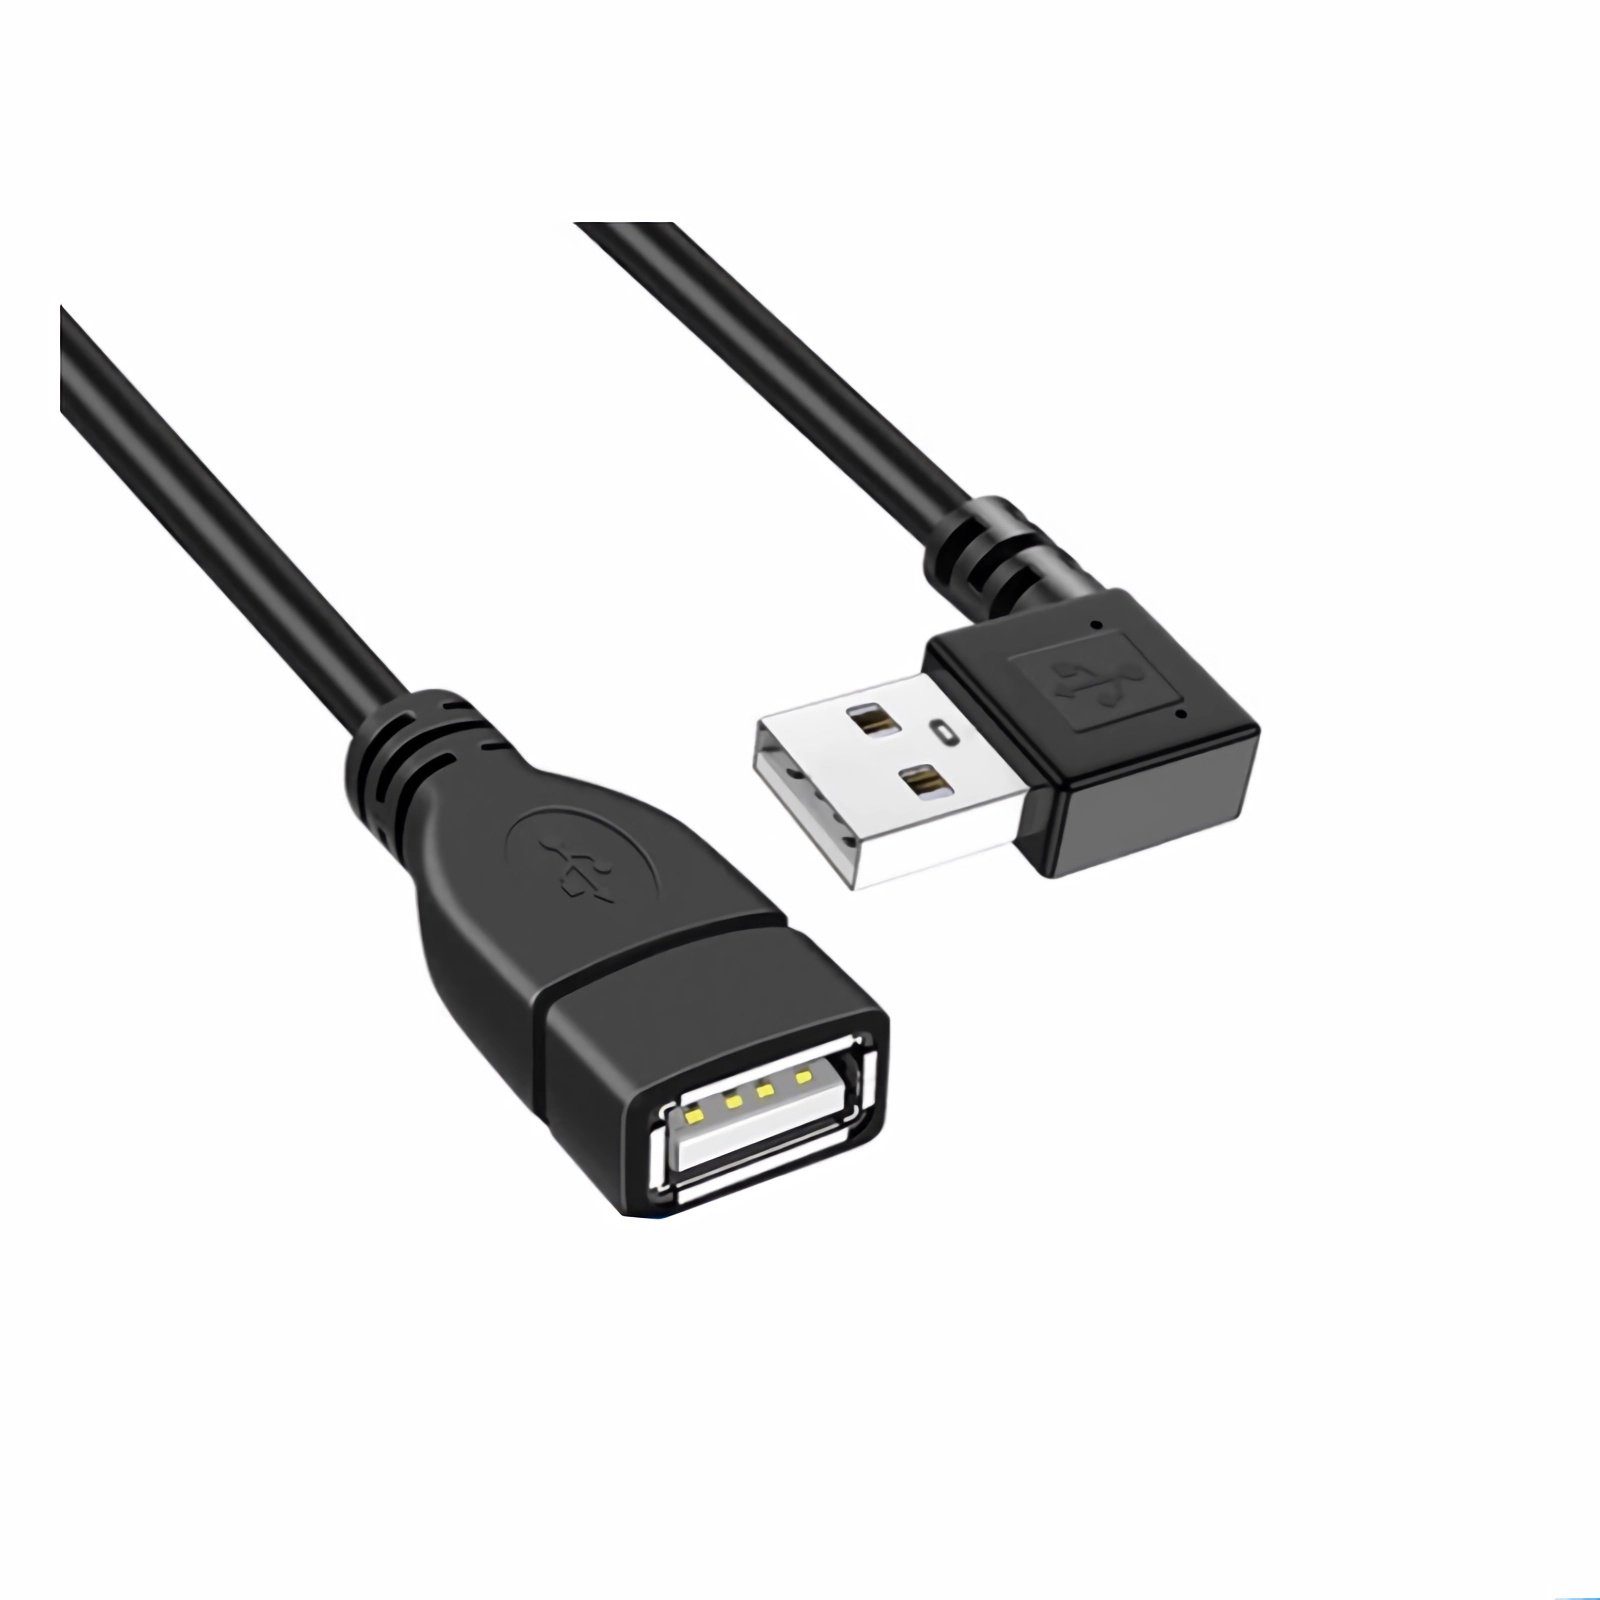 Bolwins G29 USB 2.0 Verlängerung Adapter Verlängerungskabel nach rechts  20cm Computer-Kabel